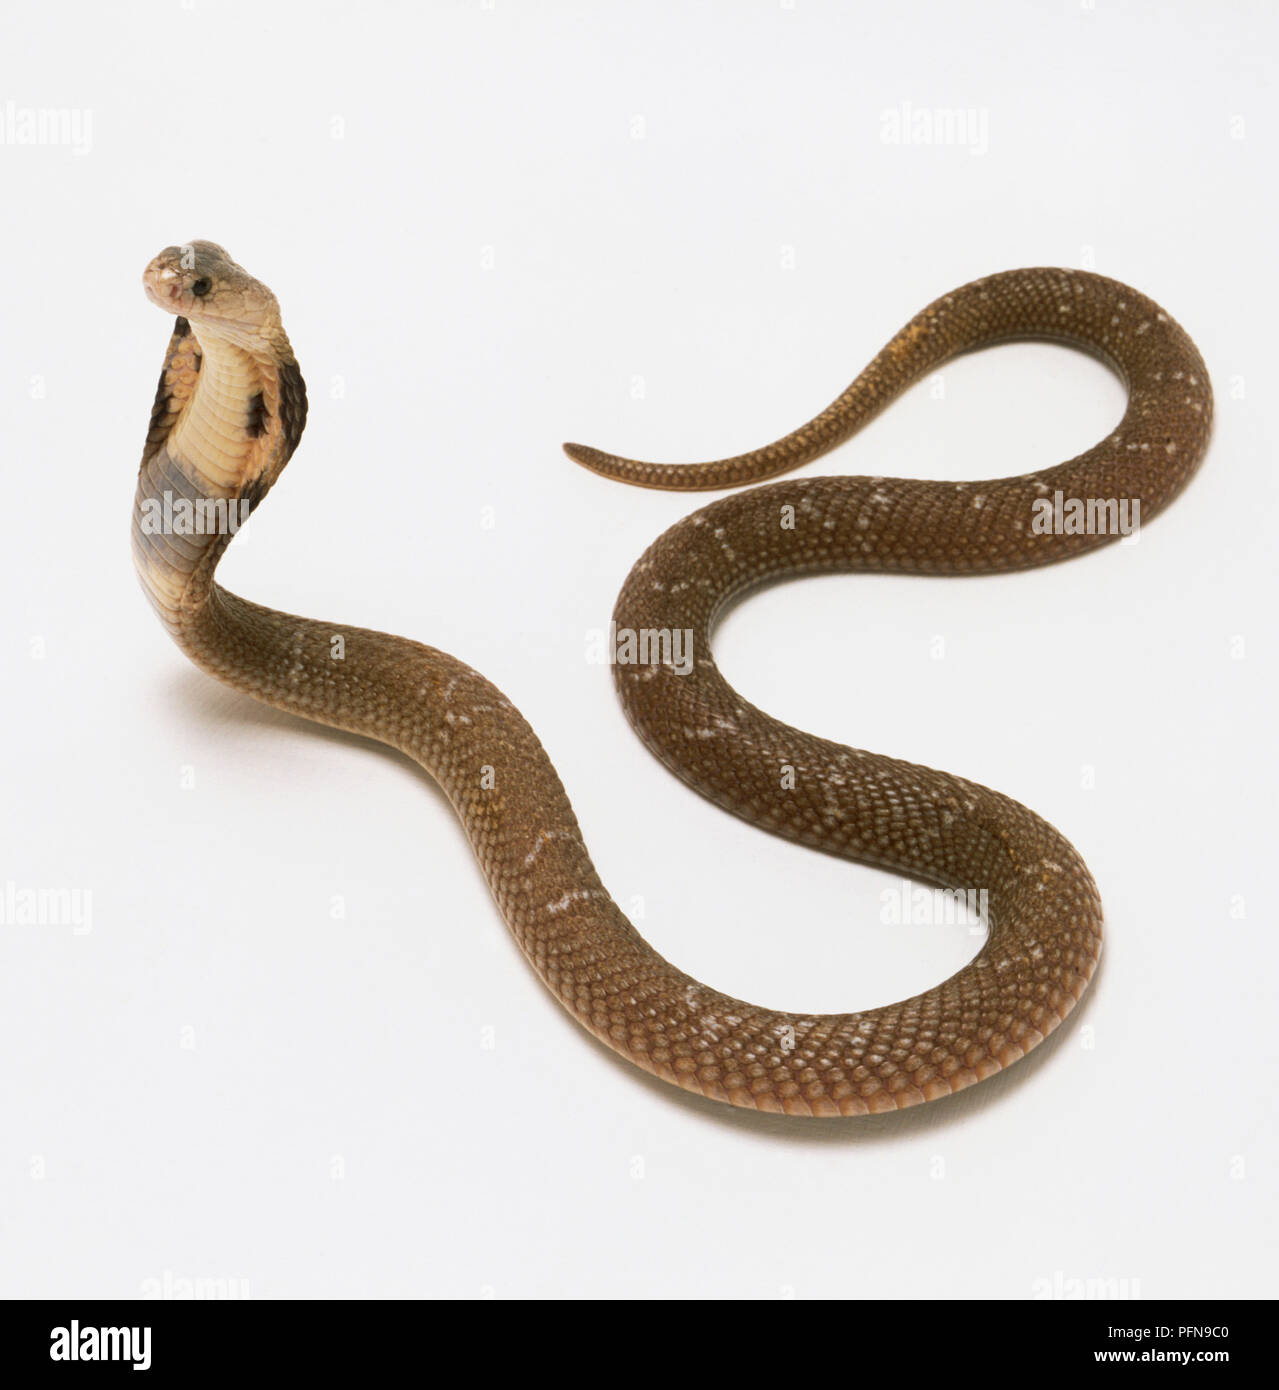 Monocled Cobra difundiendo el capó para hacer la cabeza se ven más grandes. La serpiente es de color marrón con motas pálido en las escalas. Foto de stock